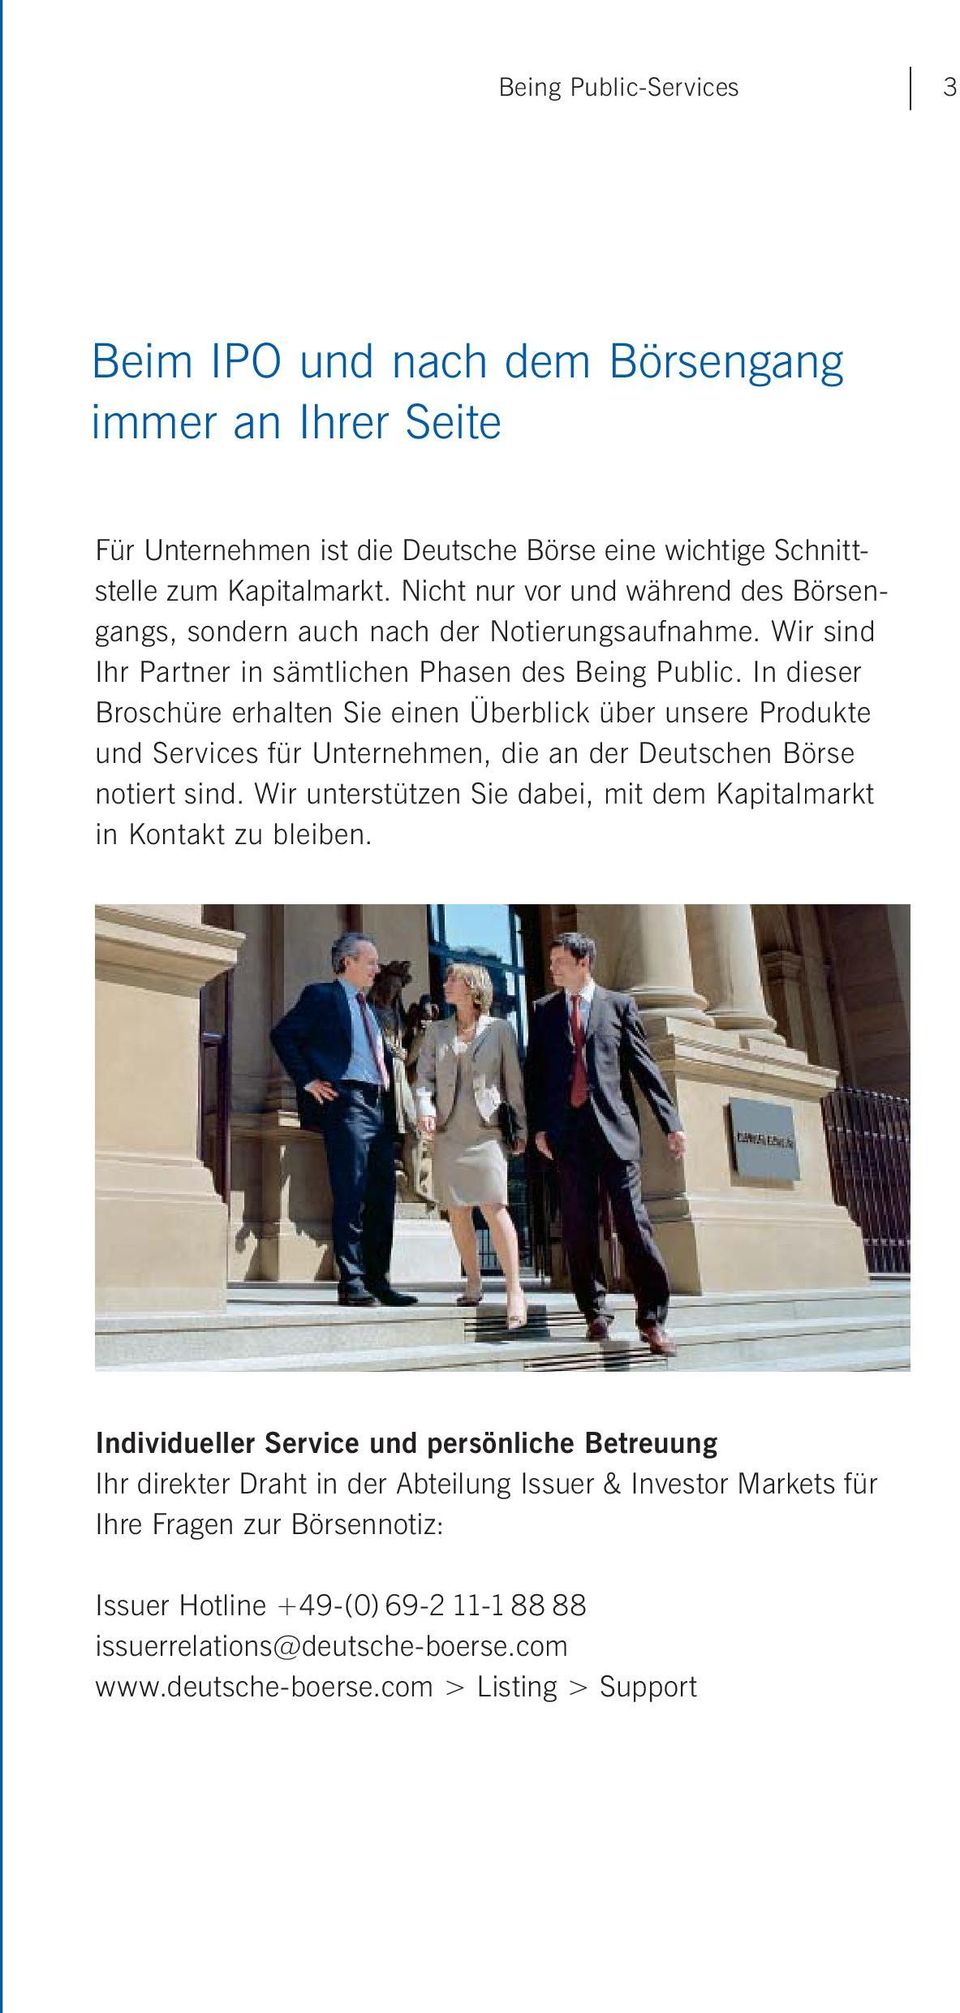 In dieser Broschüre erhalten Sie einen Überblick über unsere Produkte und Services für Unternehmen, die an der Deutschen Börse notiert sind.